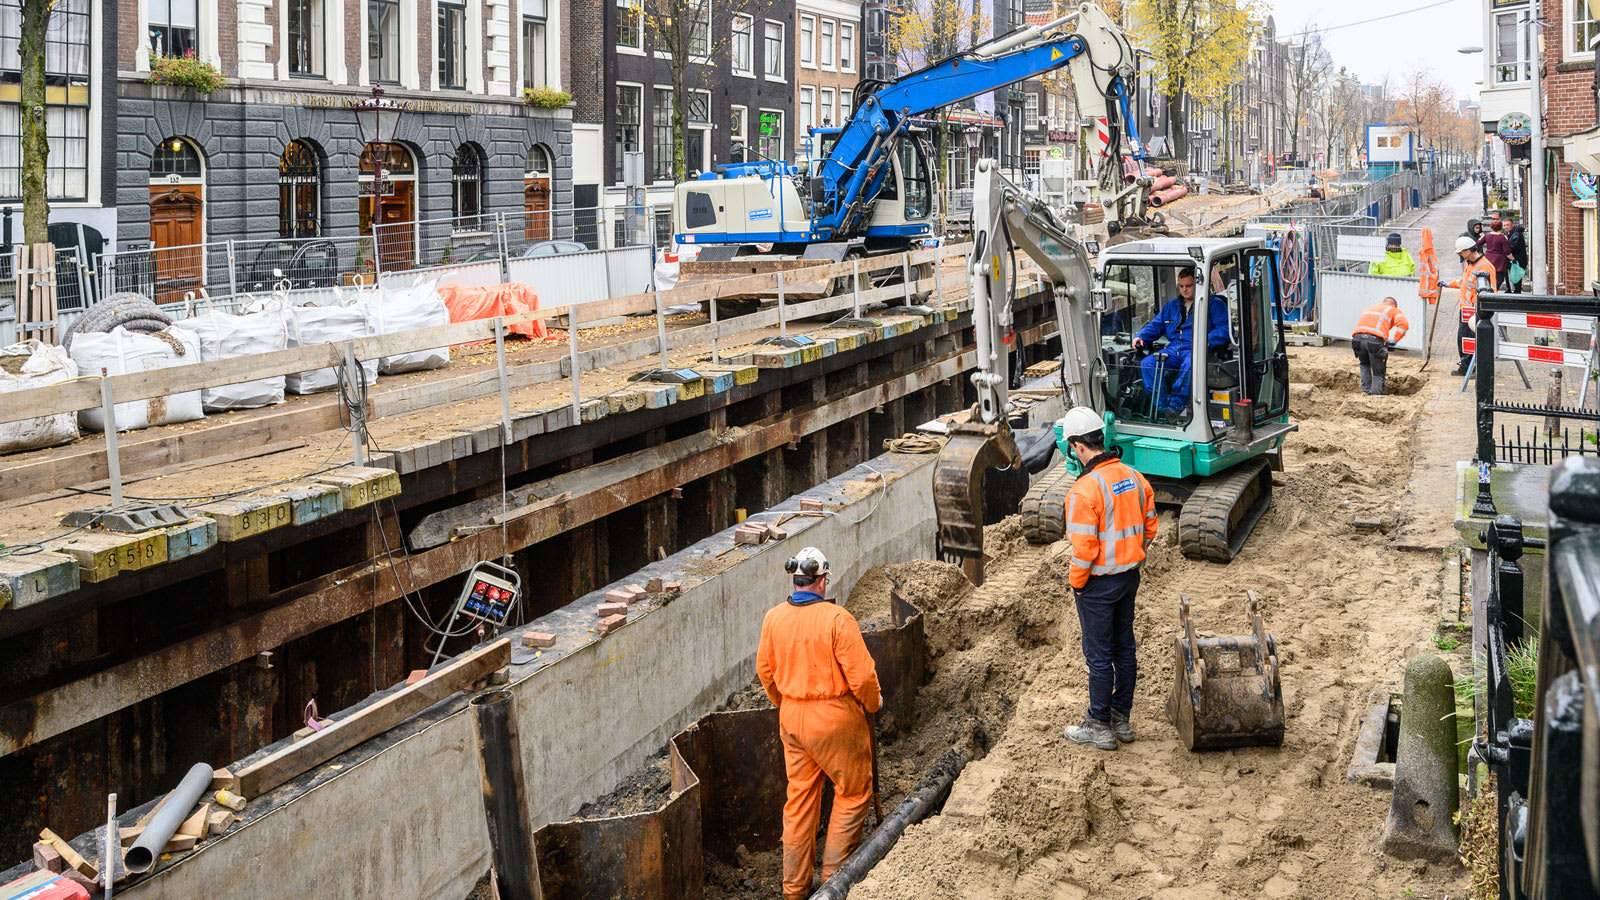 أمستردام على حافة الانهيار..كيف تخطط العاصمة الهولندية لإنقاذ بنيتها التحتية التاريخية؟